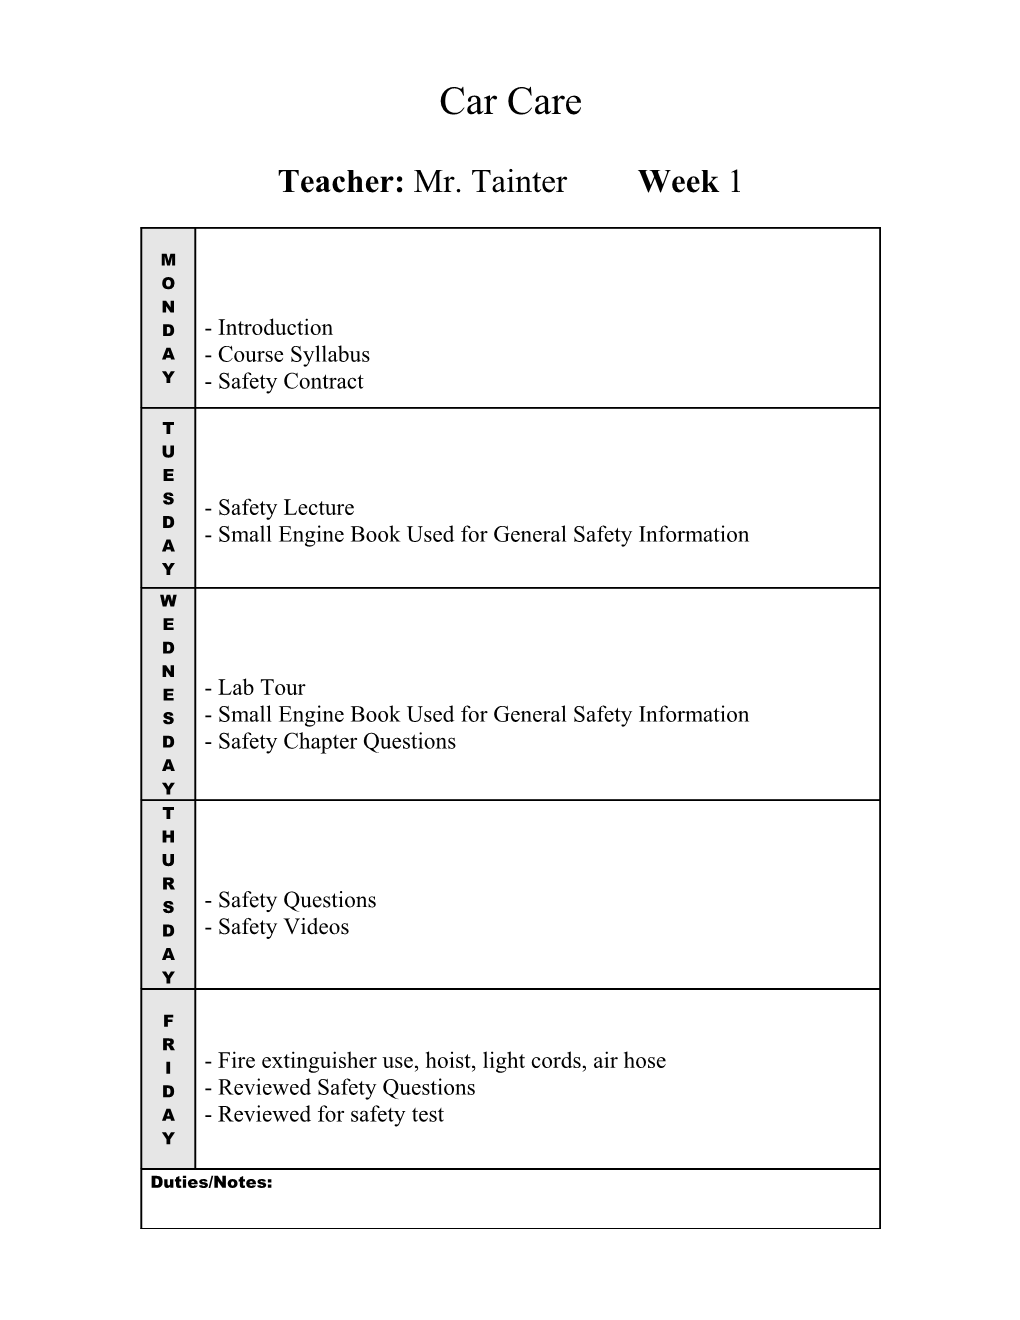 Teacher: Mr. Tainter Week 1